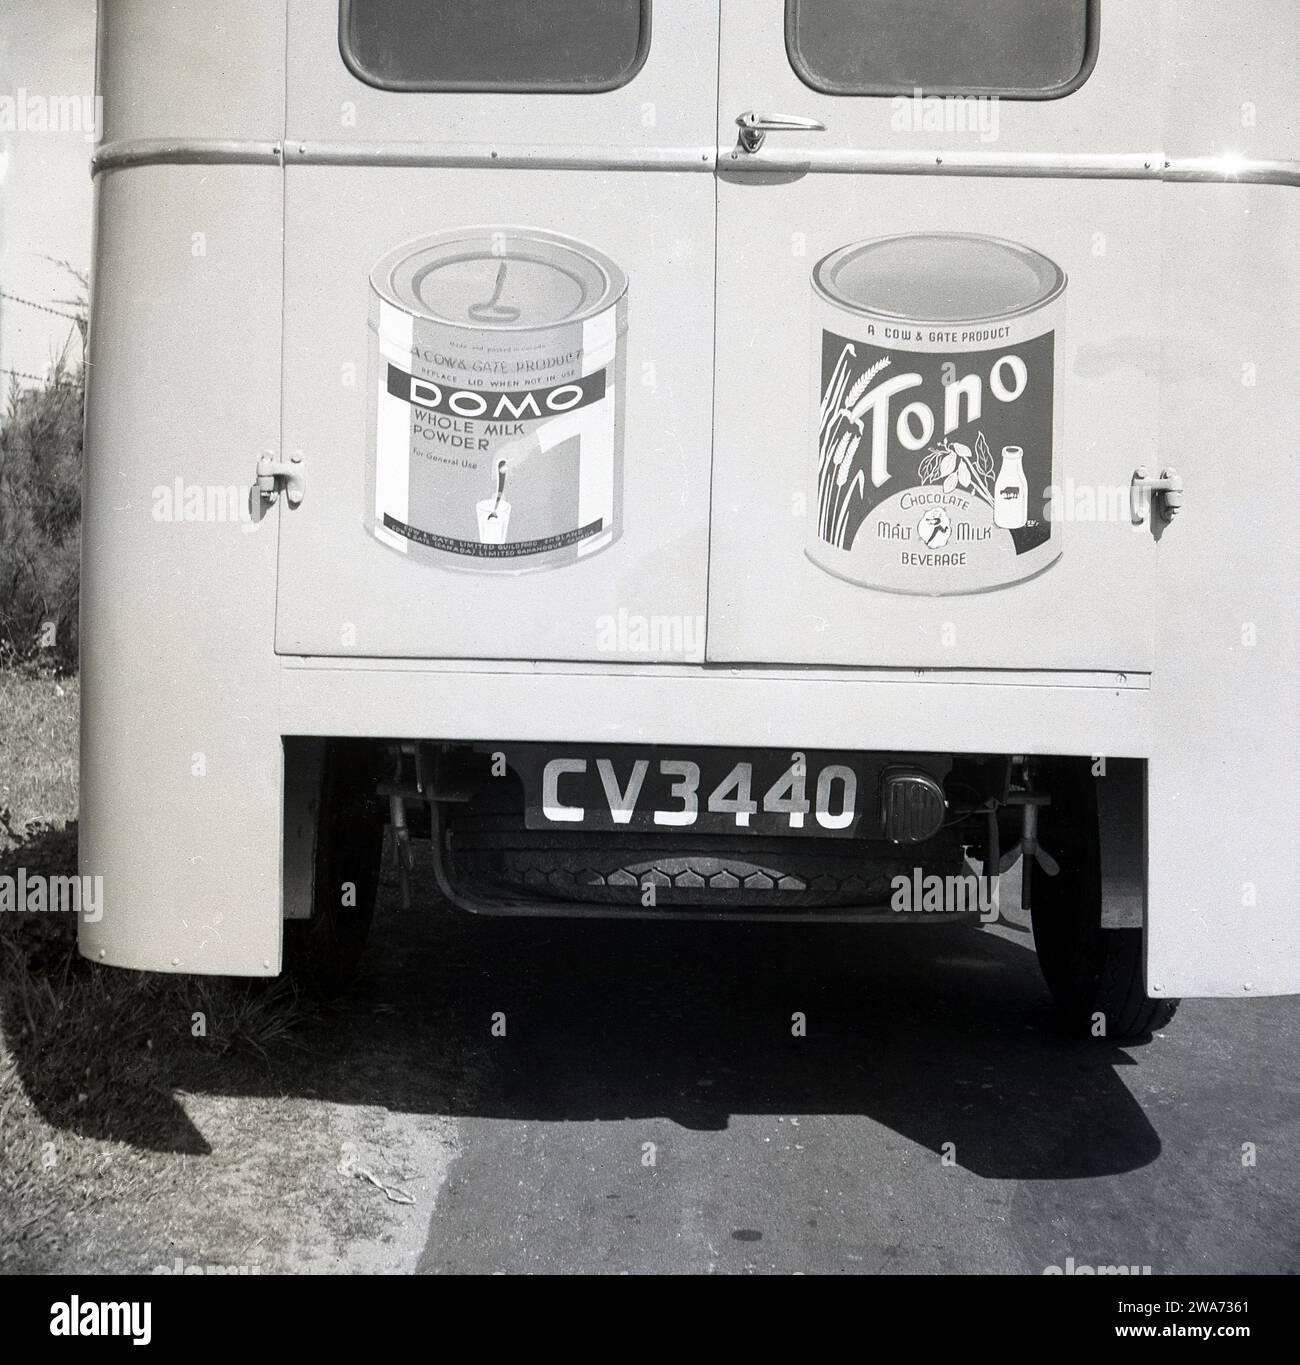 1953, storico, Colombo, Celyon (Sri Lanka) Vista sul retro del furgone Commer, che mostra due prodotti di latte e latte vaccino alle porte posteriori; Domo, latte intero in polvere e tono, una bevanda al latte di malto al cioccolato. Charles & Leonard Gates fondarono West Surrey Dairy nel 1882 dopo la morte del loro padre, e divennero di successo con un prodotto a base di latte alimentato, il latte secco inglese, che aiutò a nutrire i bambini delle famiglie povere. Rinominata Cow & Gate nel 1929, è diventata una delle principali aziende britanniche di diario che vende i suoi prodotti correlati al latte in tutto il mondo. Si fuse con United Dairies nel 1959 per formare Unigate. Foto Stock